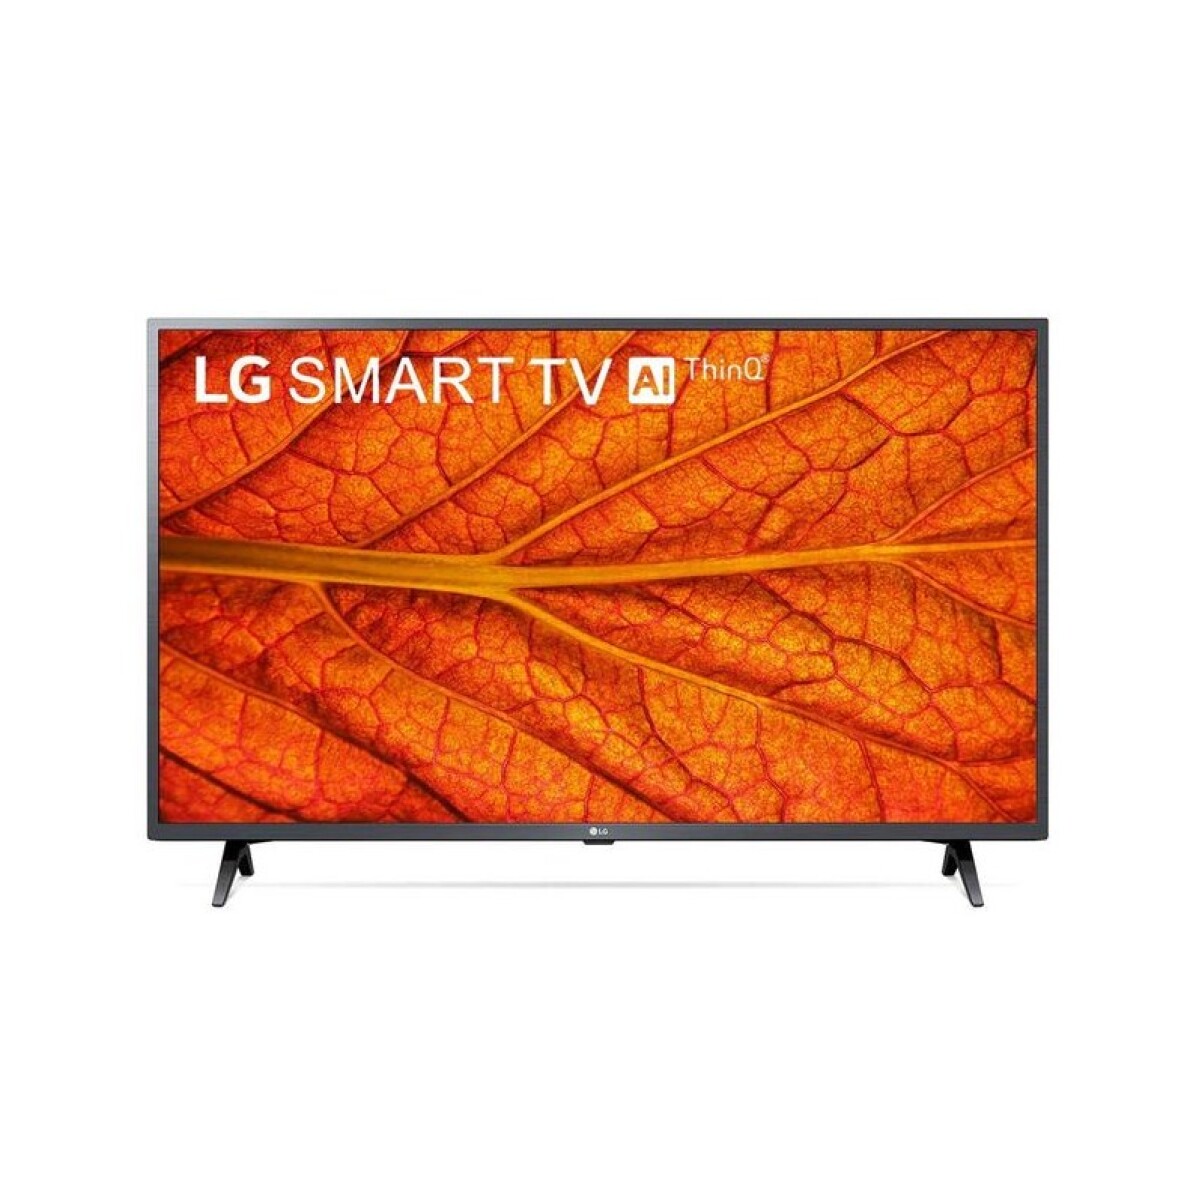 TV LG 43" LED SMART TV FHD 